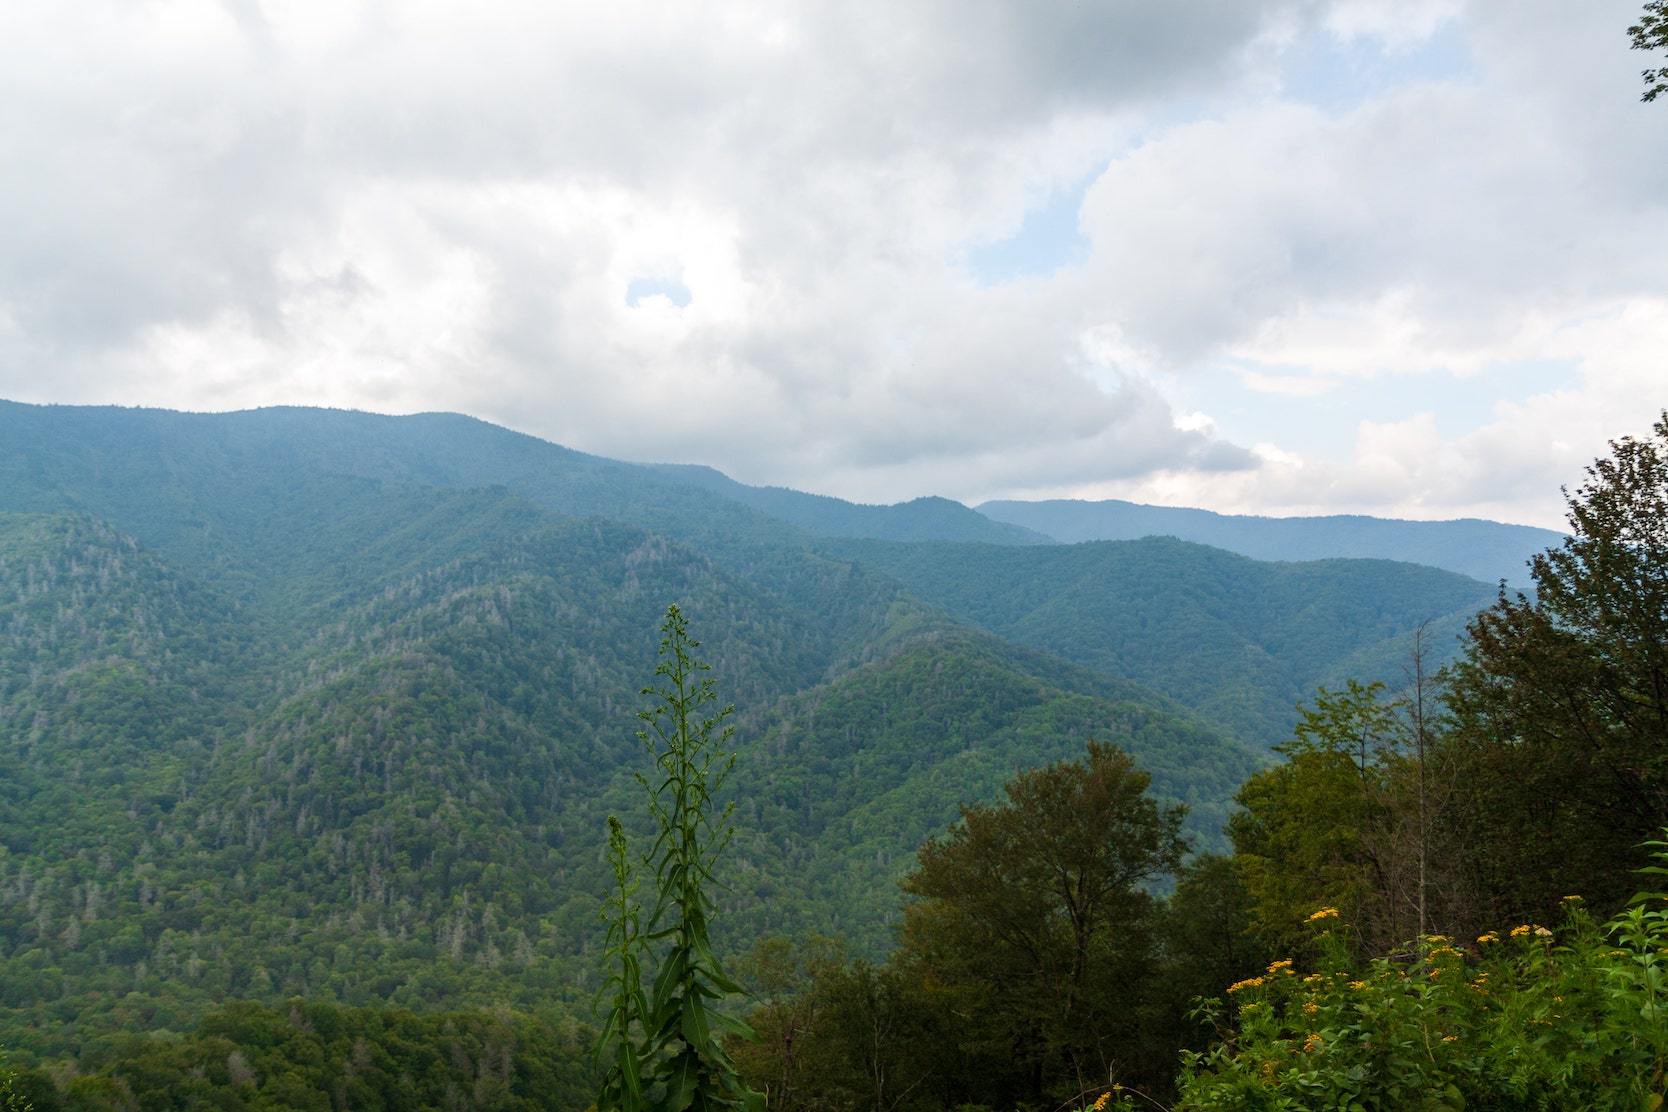 Mountains and greenery surrounding Oak Ridge, TN. 